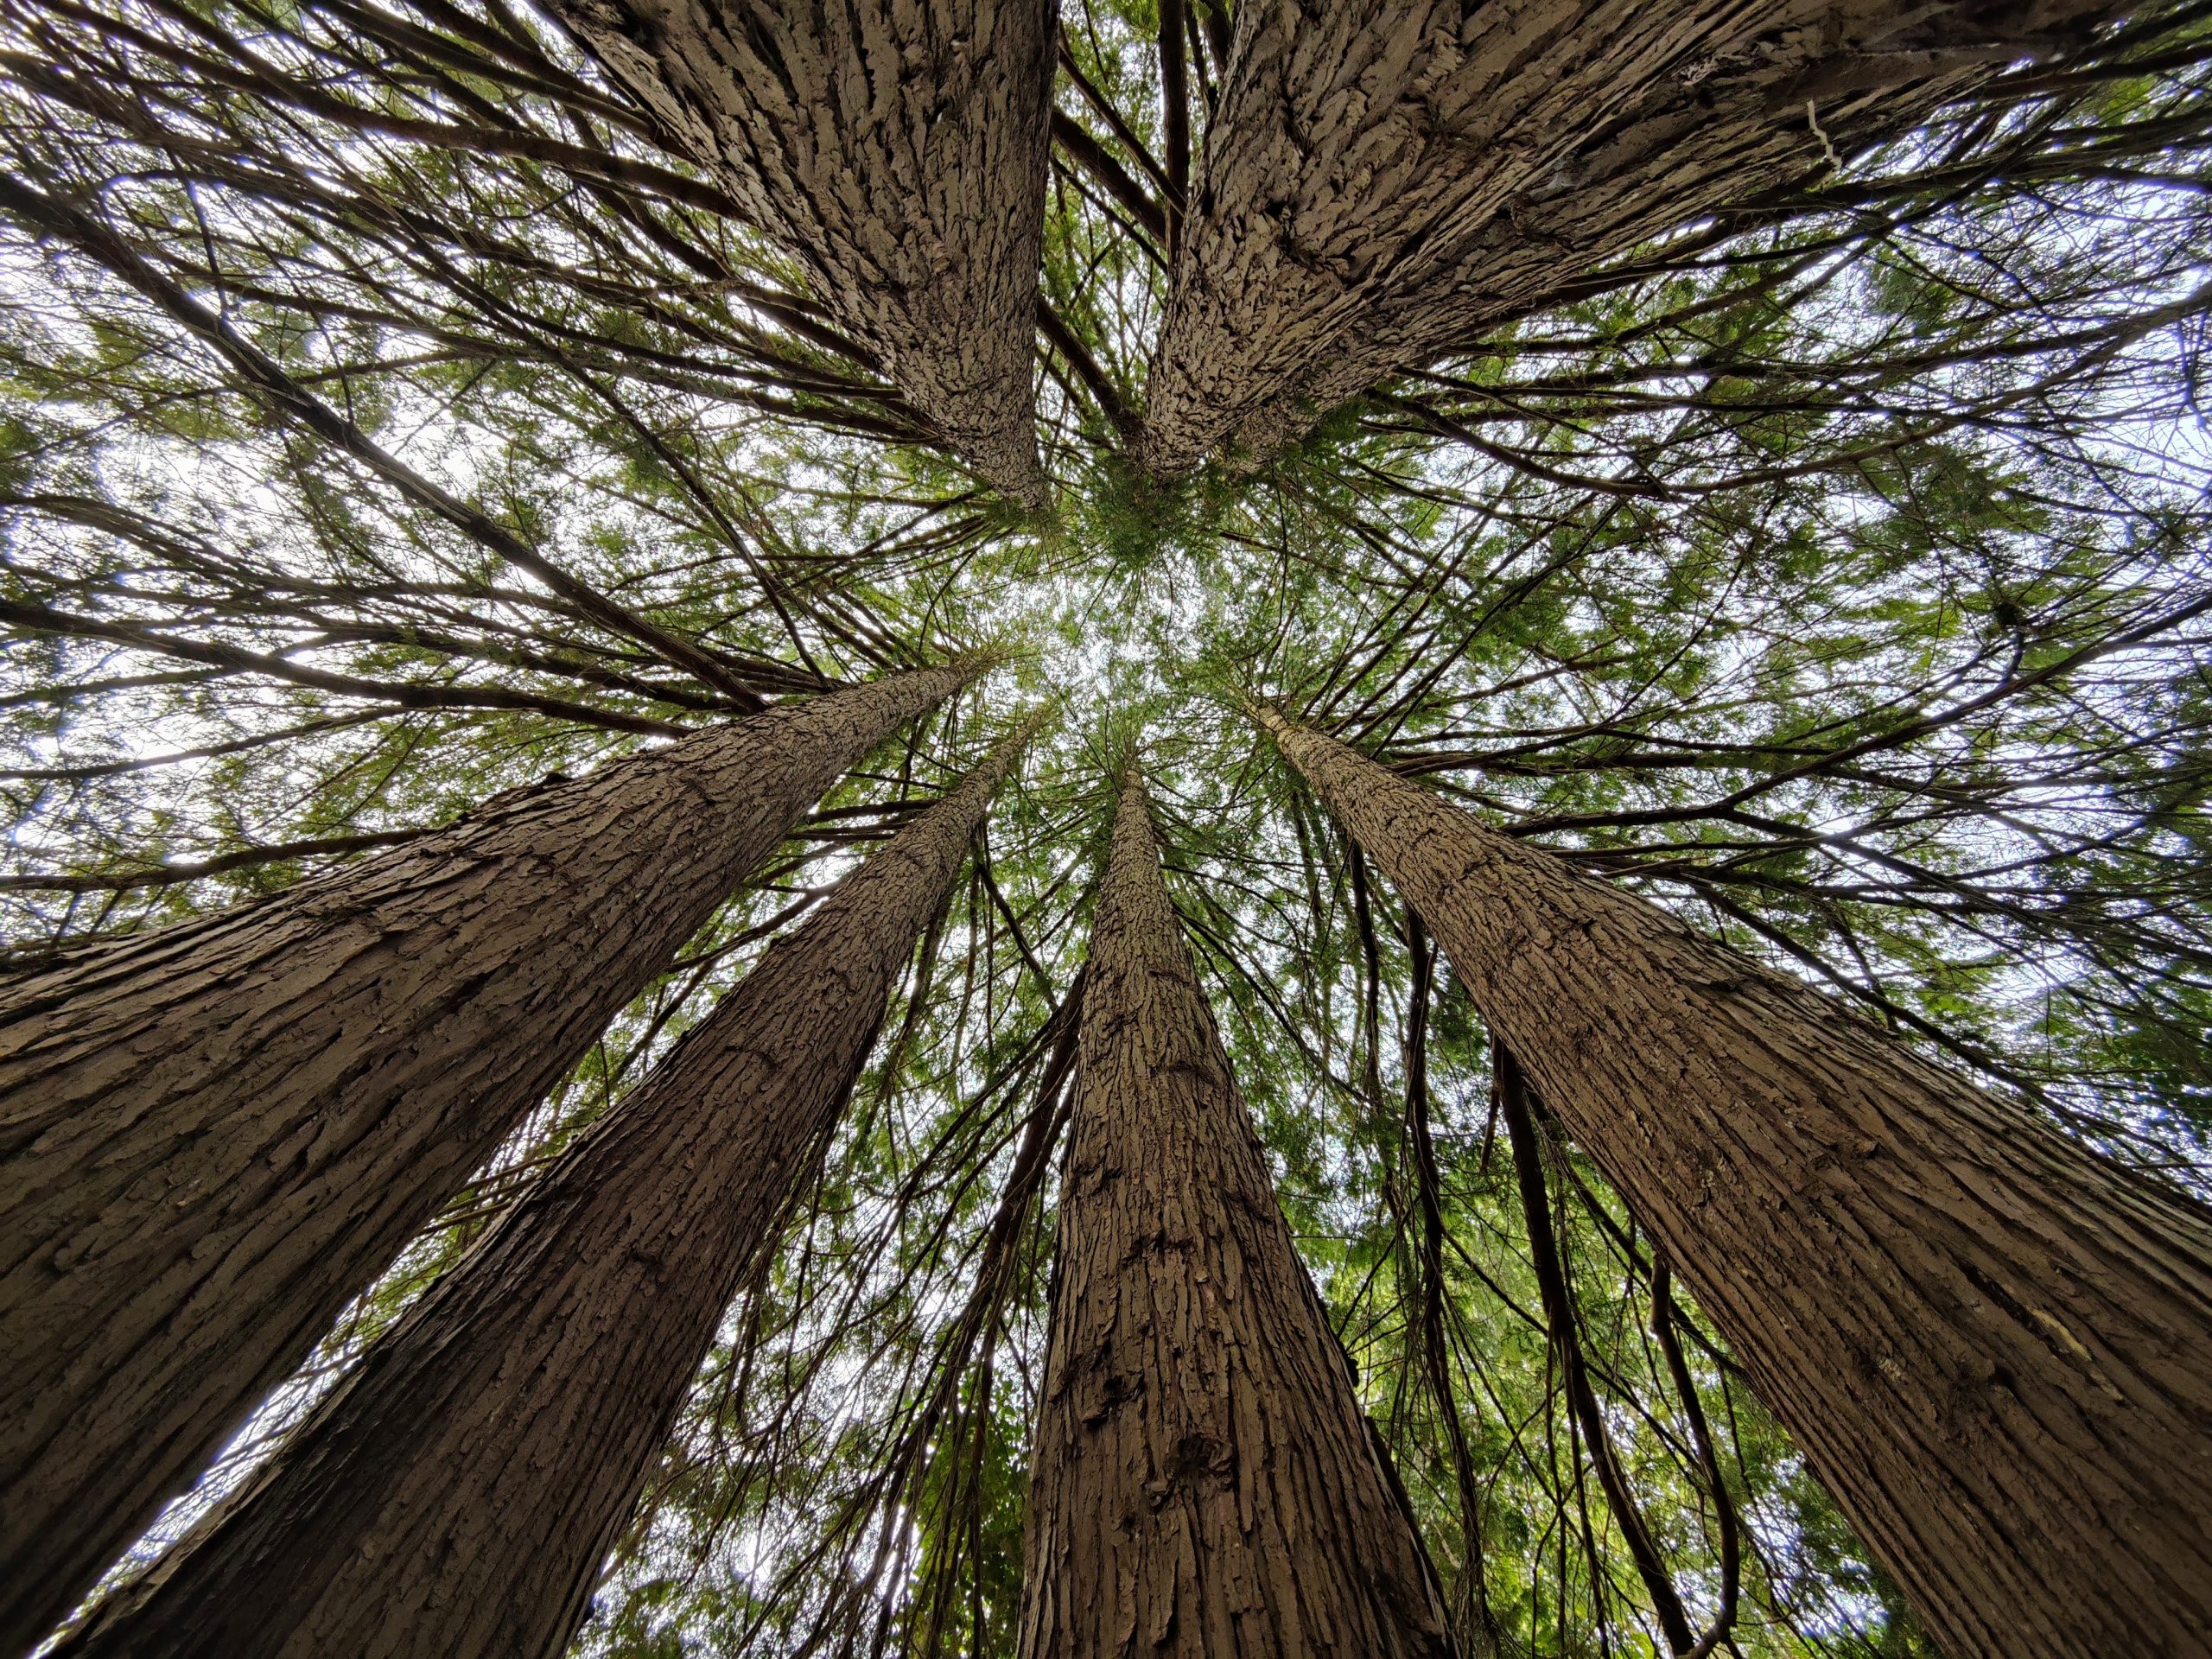 Pictures of trees, taken at Kubota Garden Seattle WA